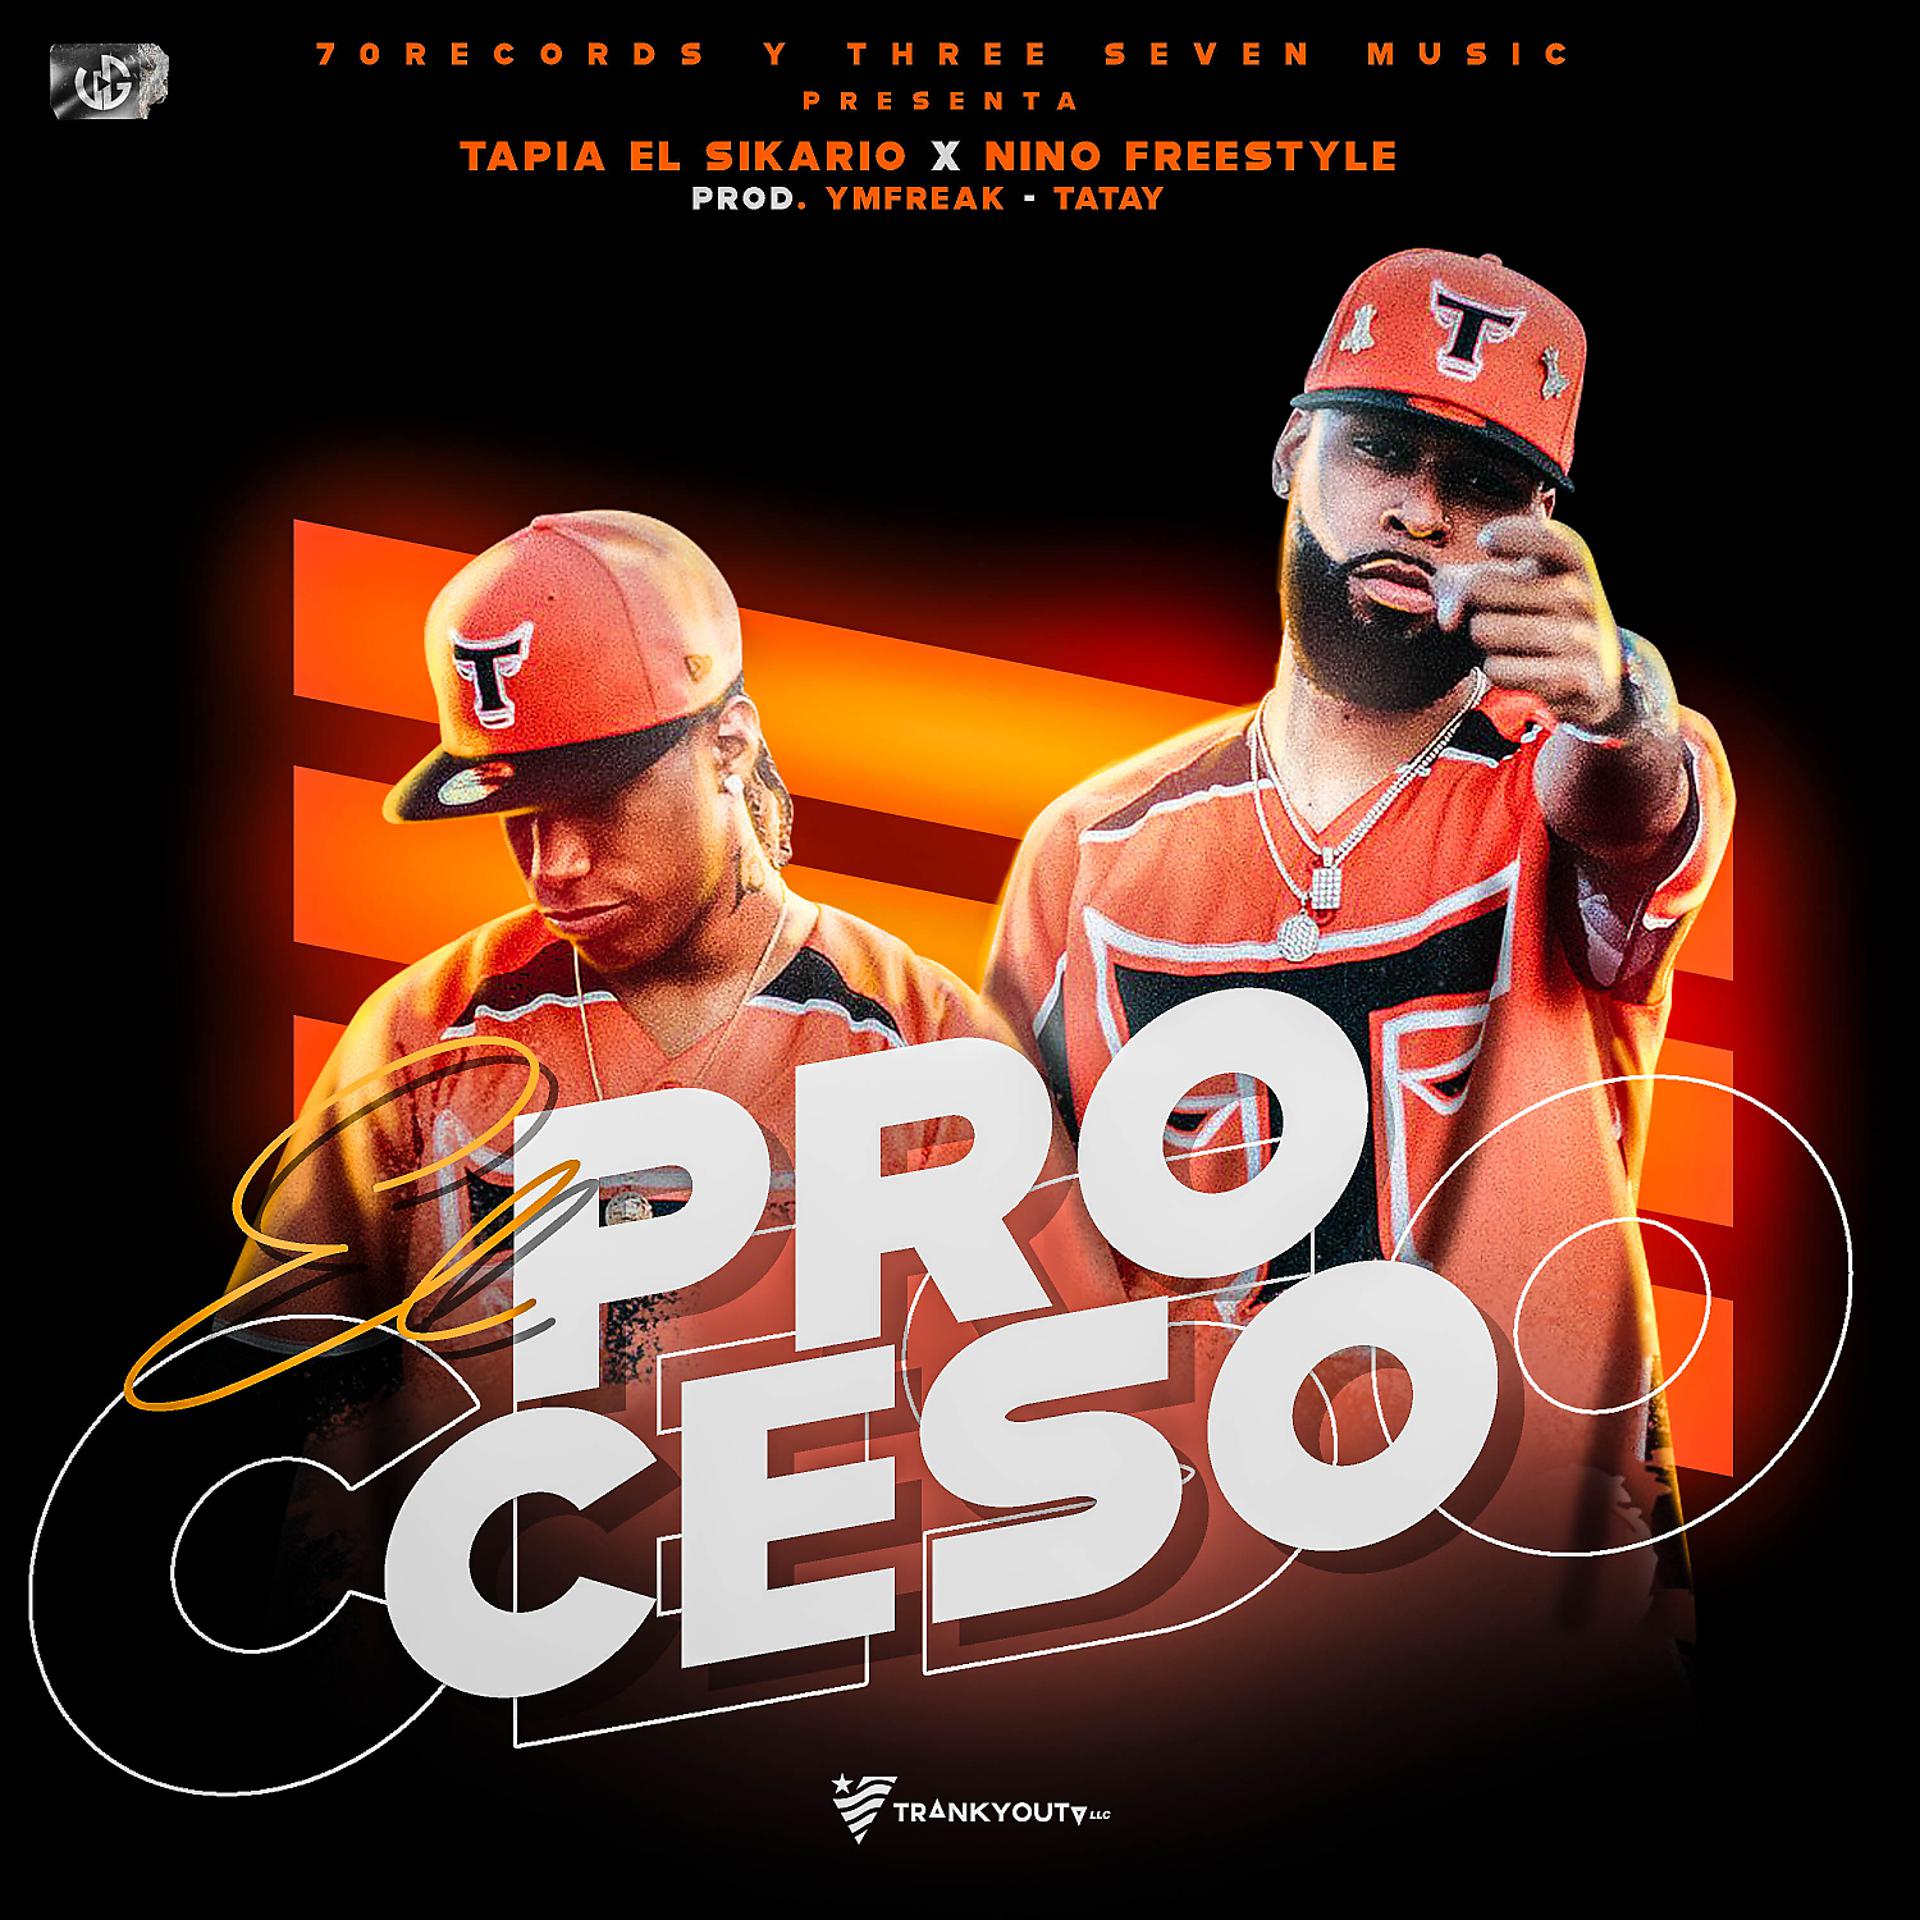 Постер альбома El Proceso